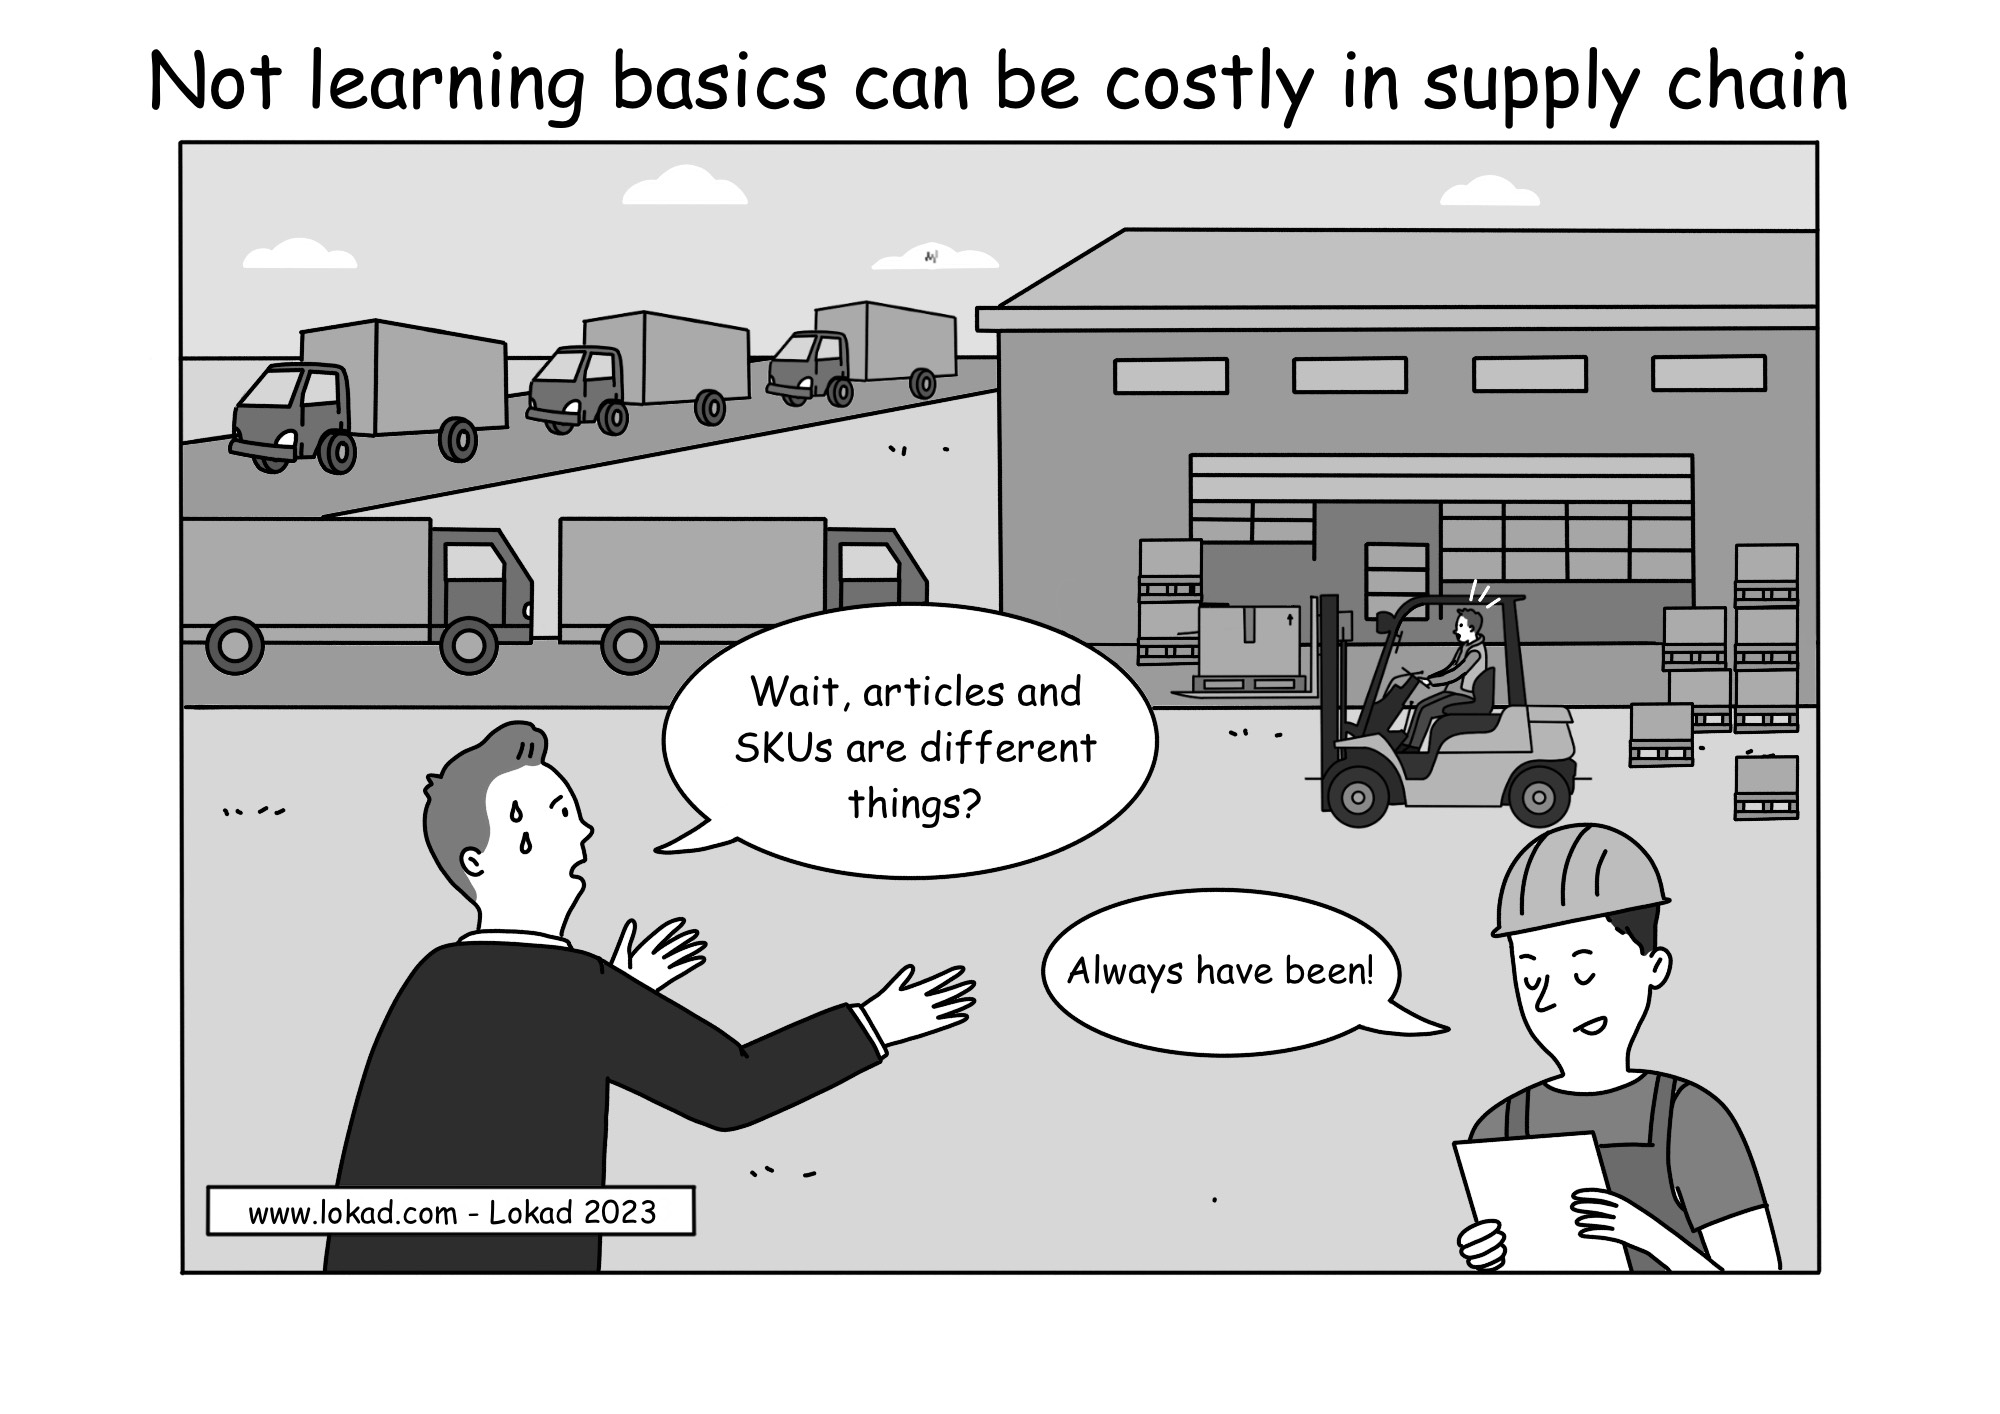 Non imparare le basi può essere costoso nella supply chain